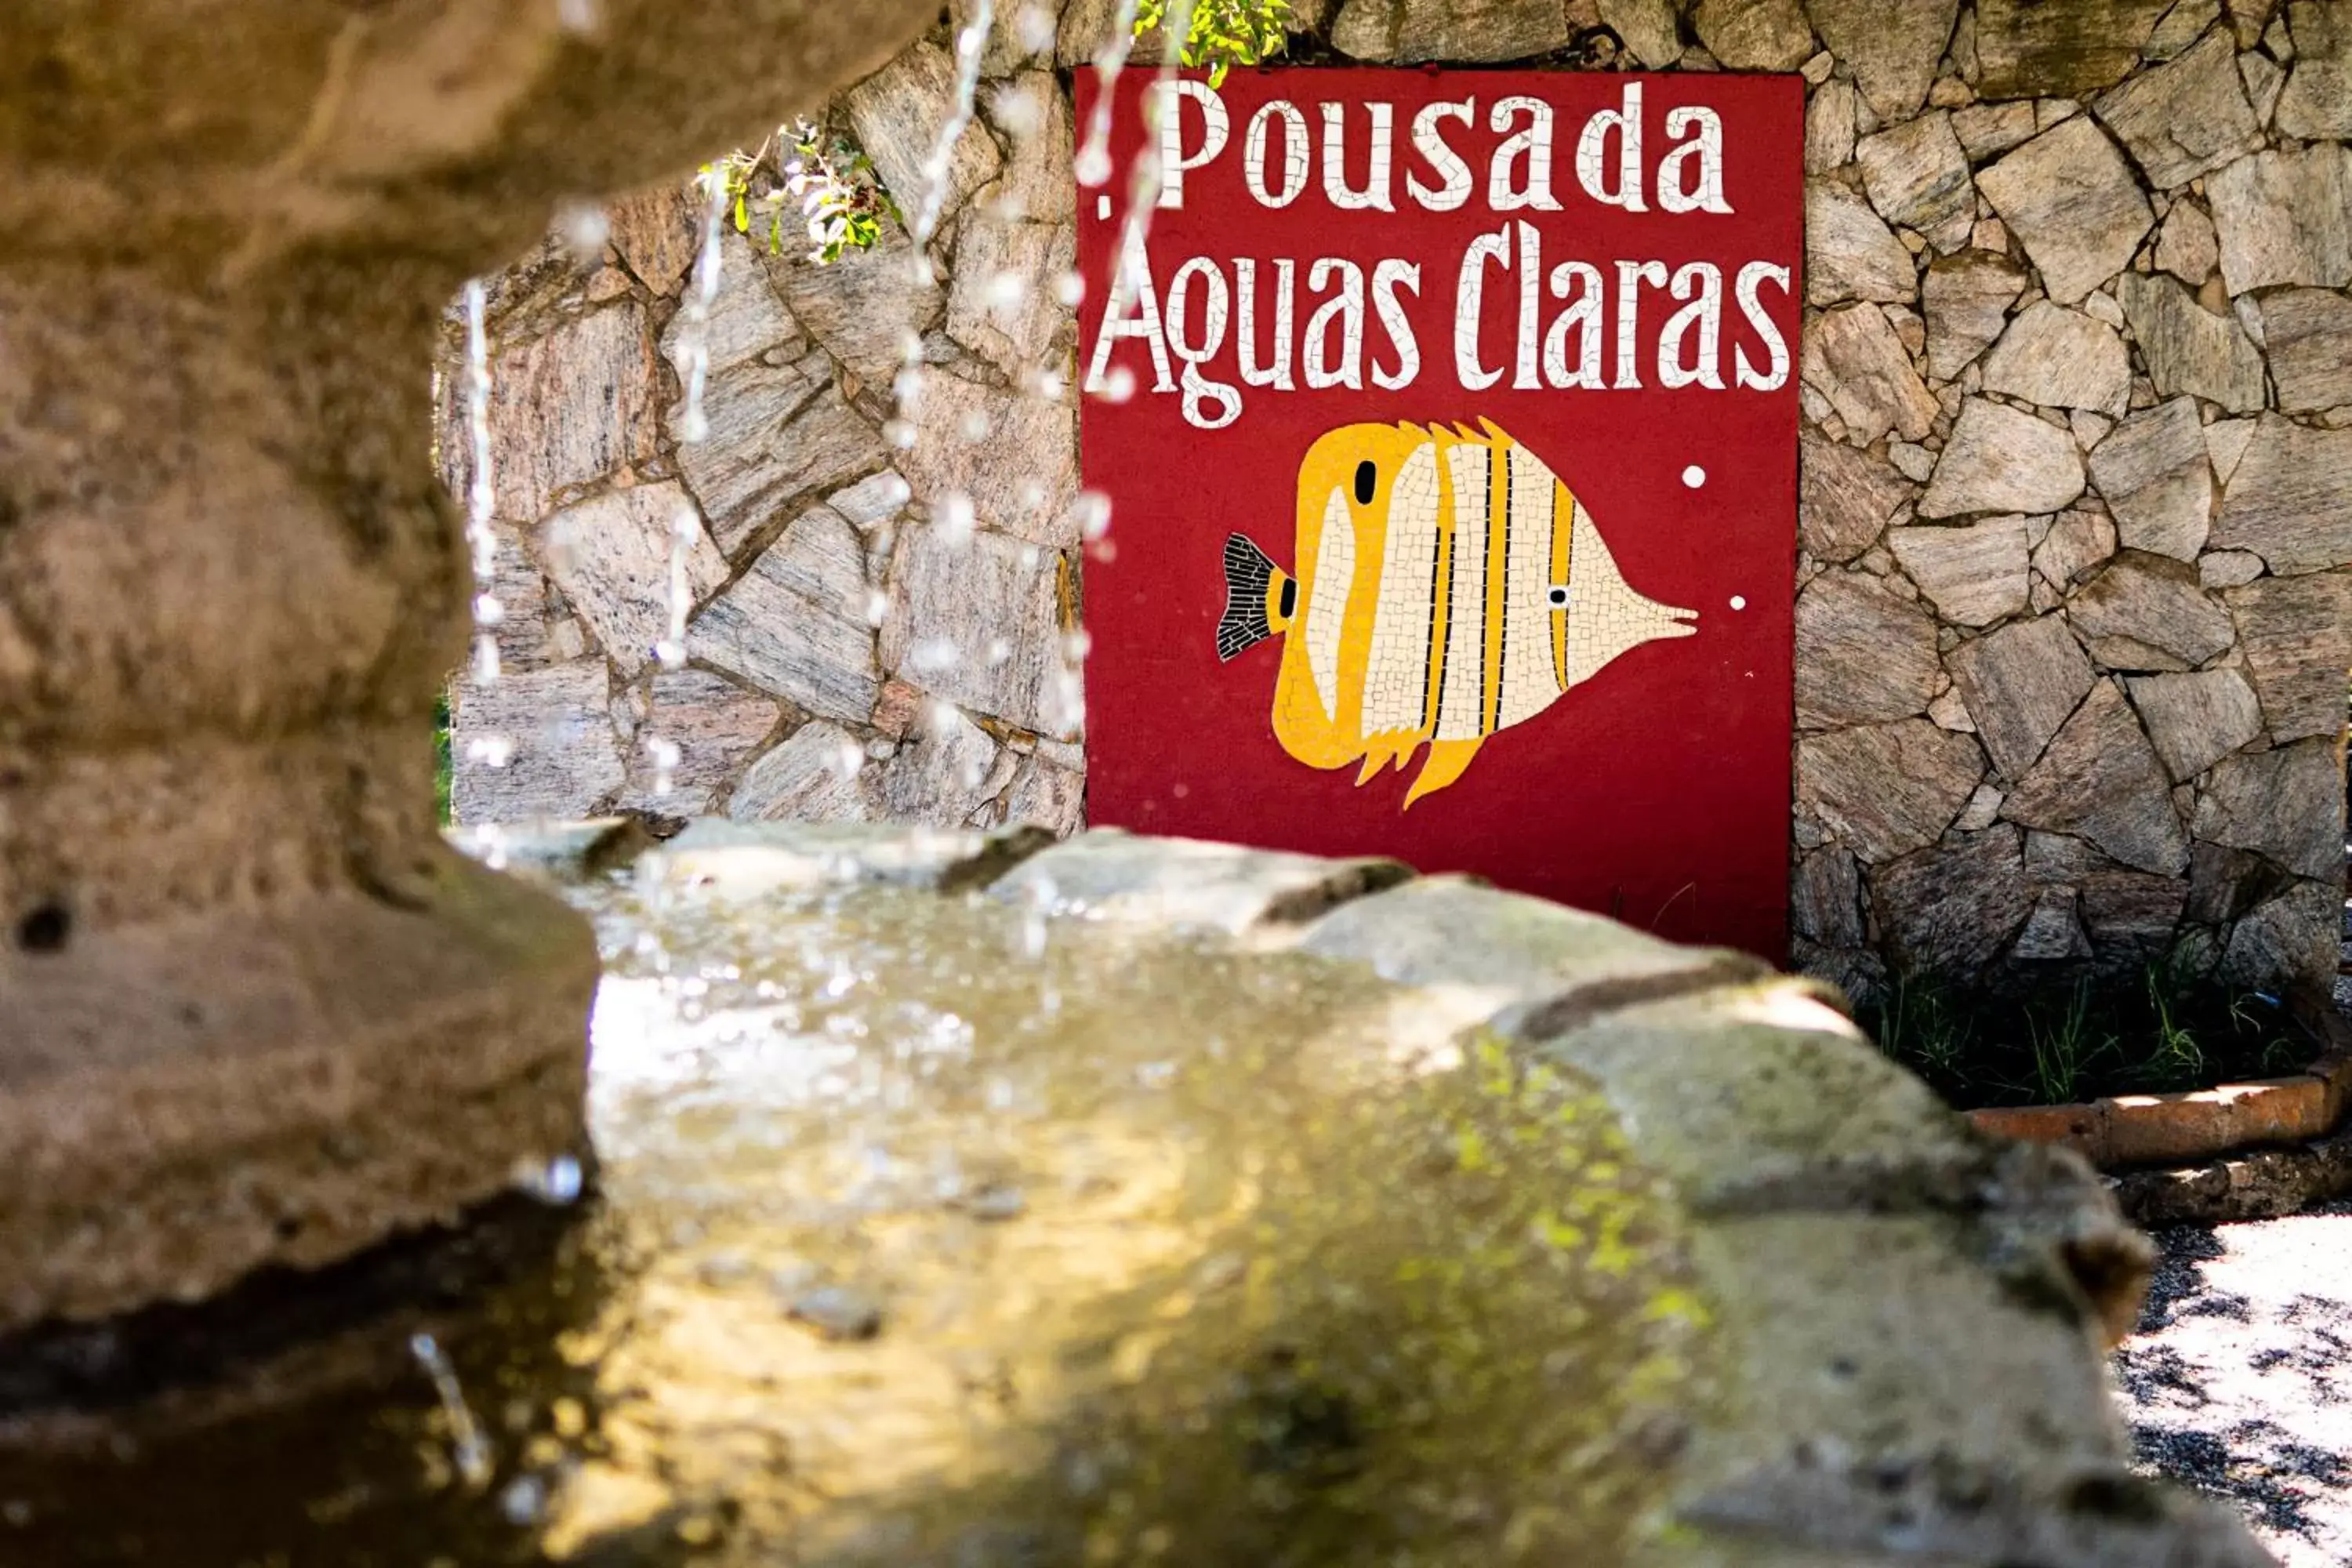 Property logo or sign in Pousada Aguas Claras